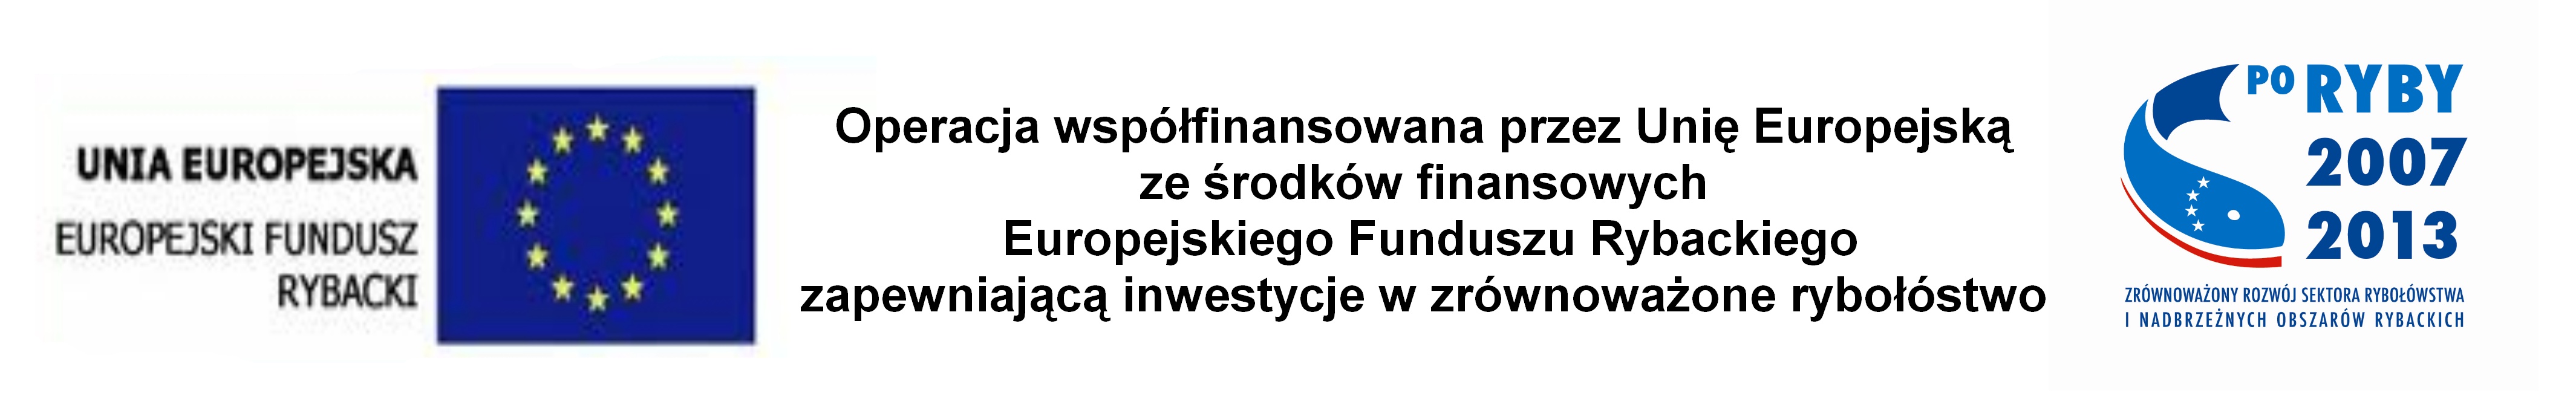 /res/BIP/Przechlewo/inwestycje/projekty_unijne/2013/remont_kosciola_w_sapolnie/00.jpg